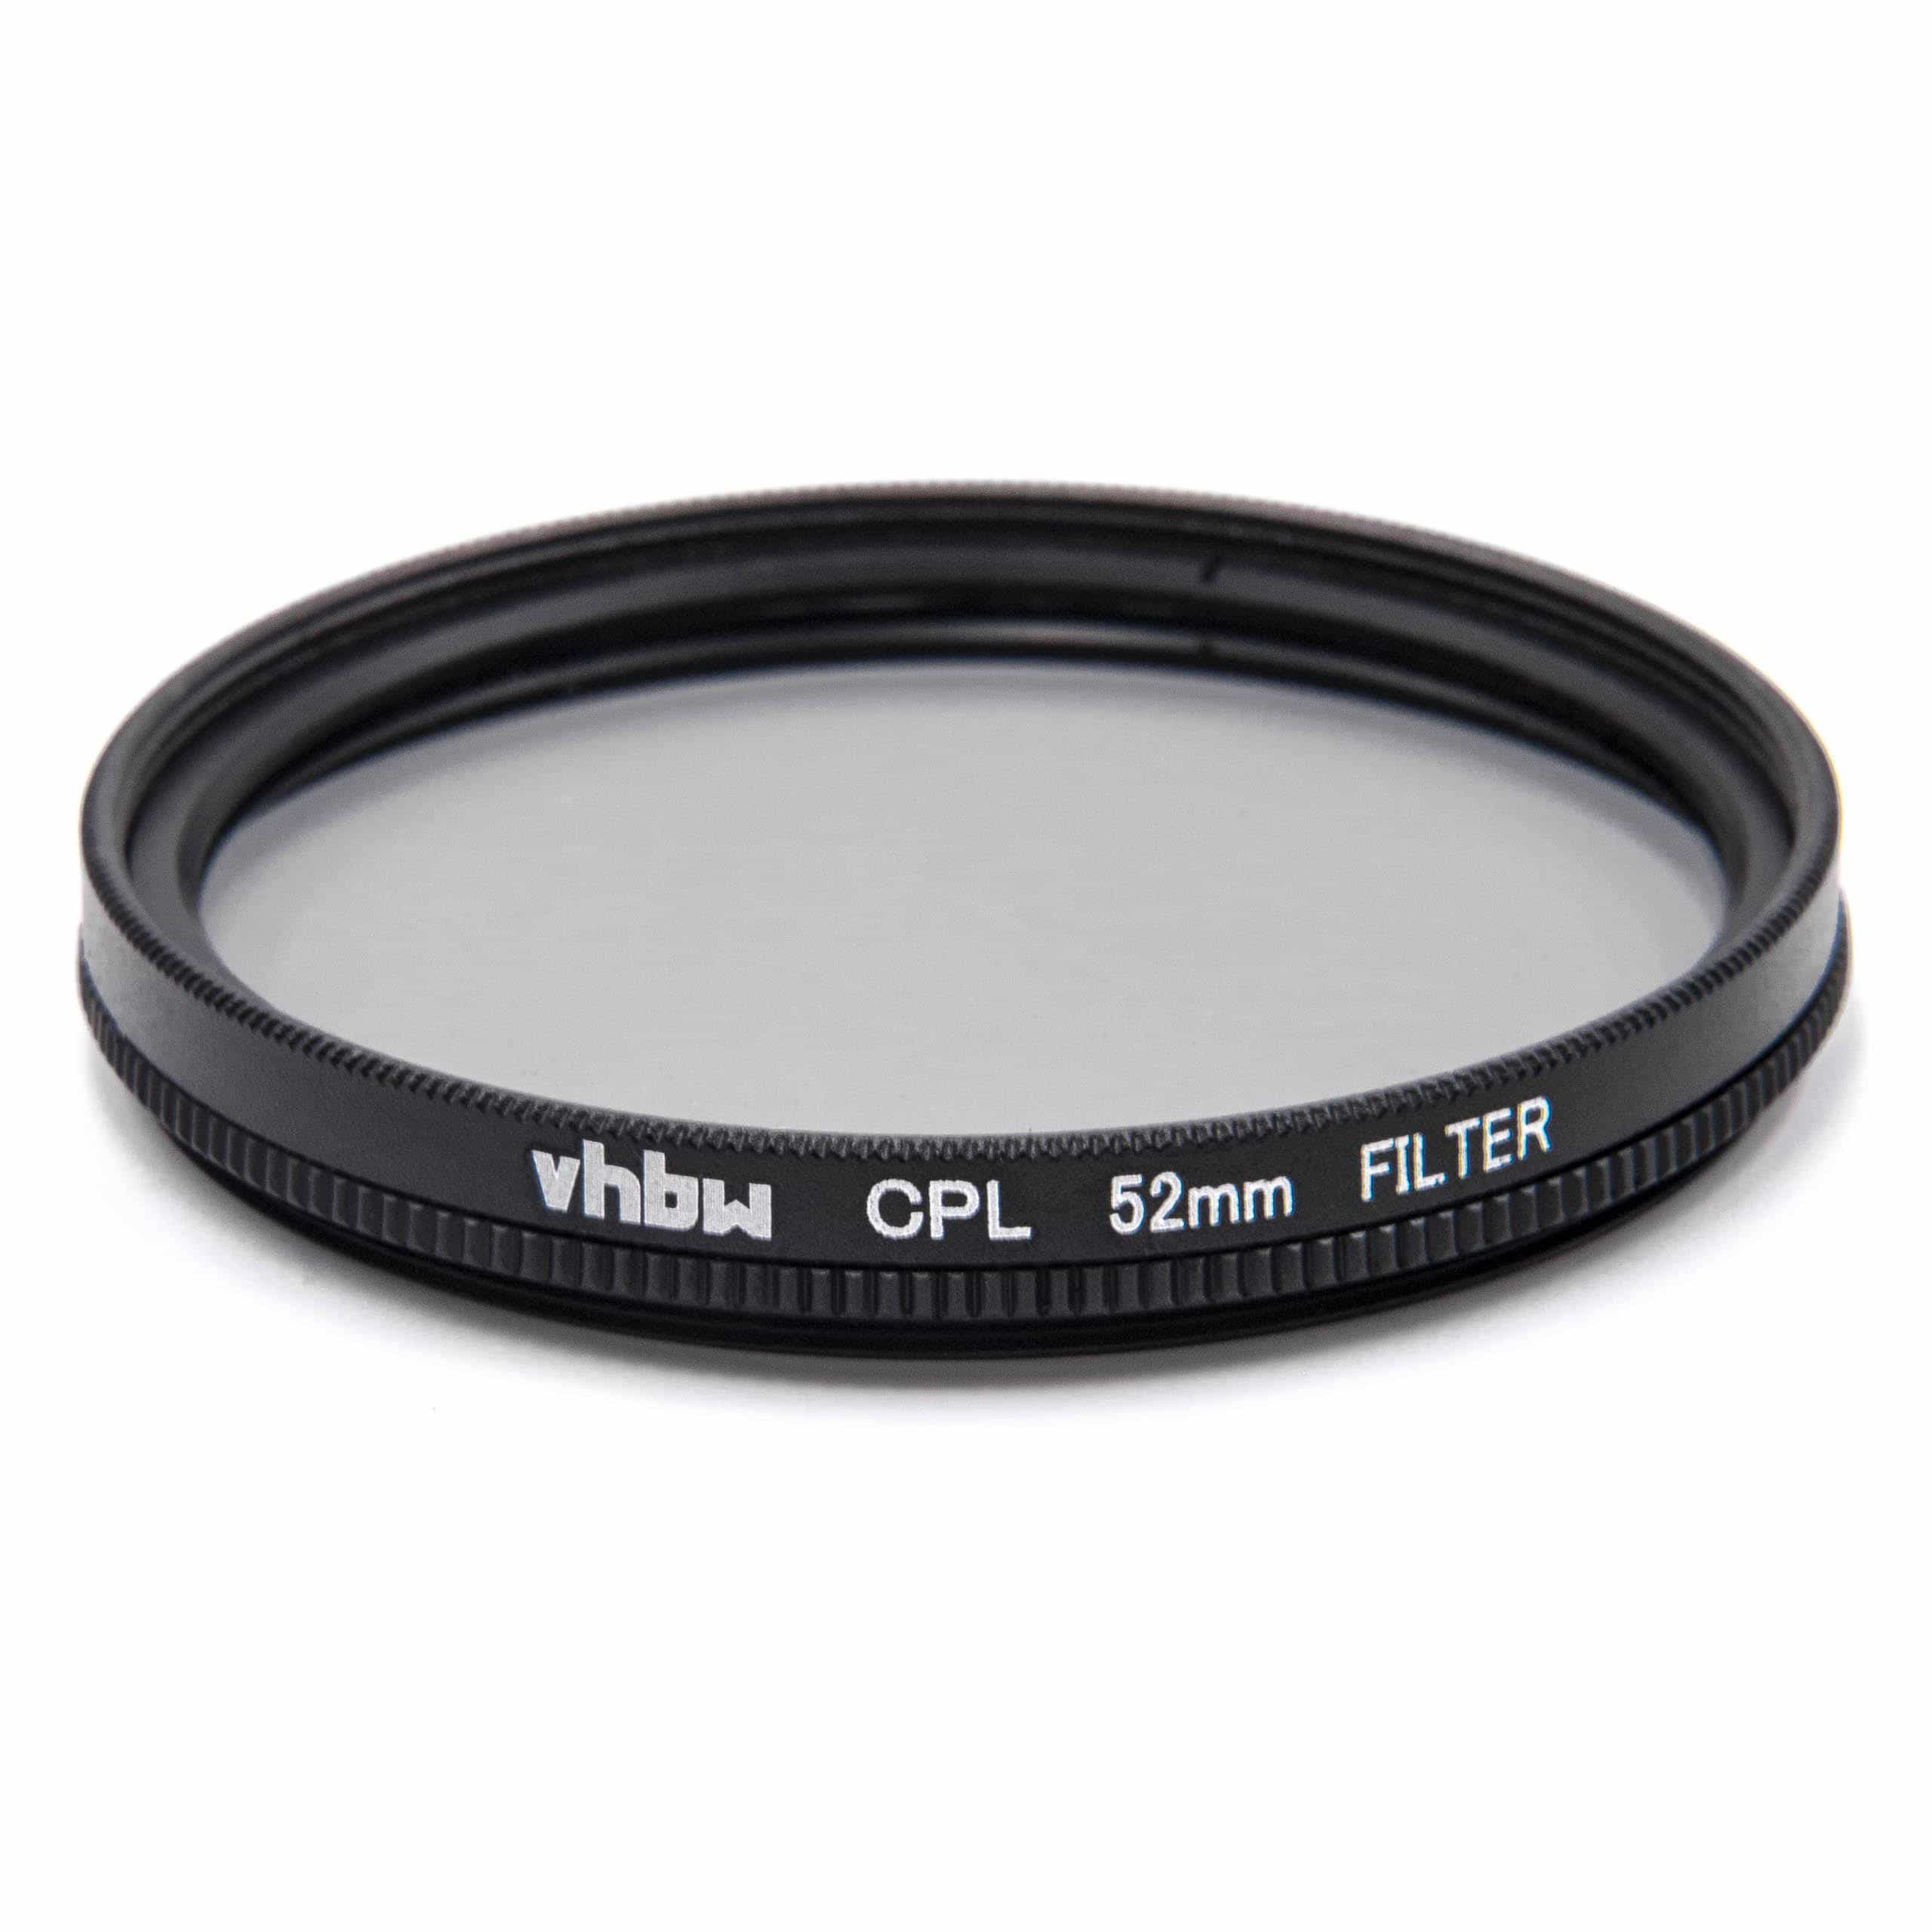 Filtre polarisant pour appareil photo et objectif de diamètre 52 mm - Filtre CPL